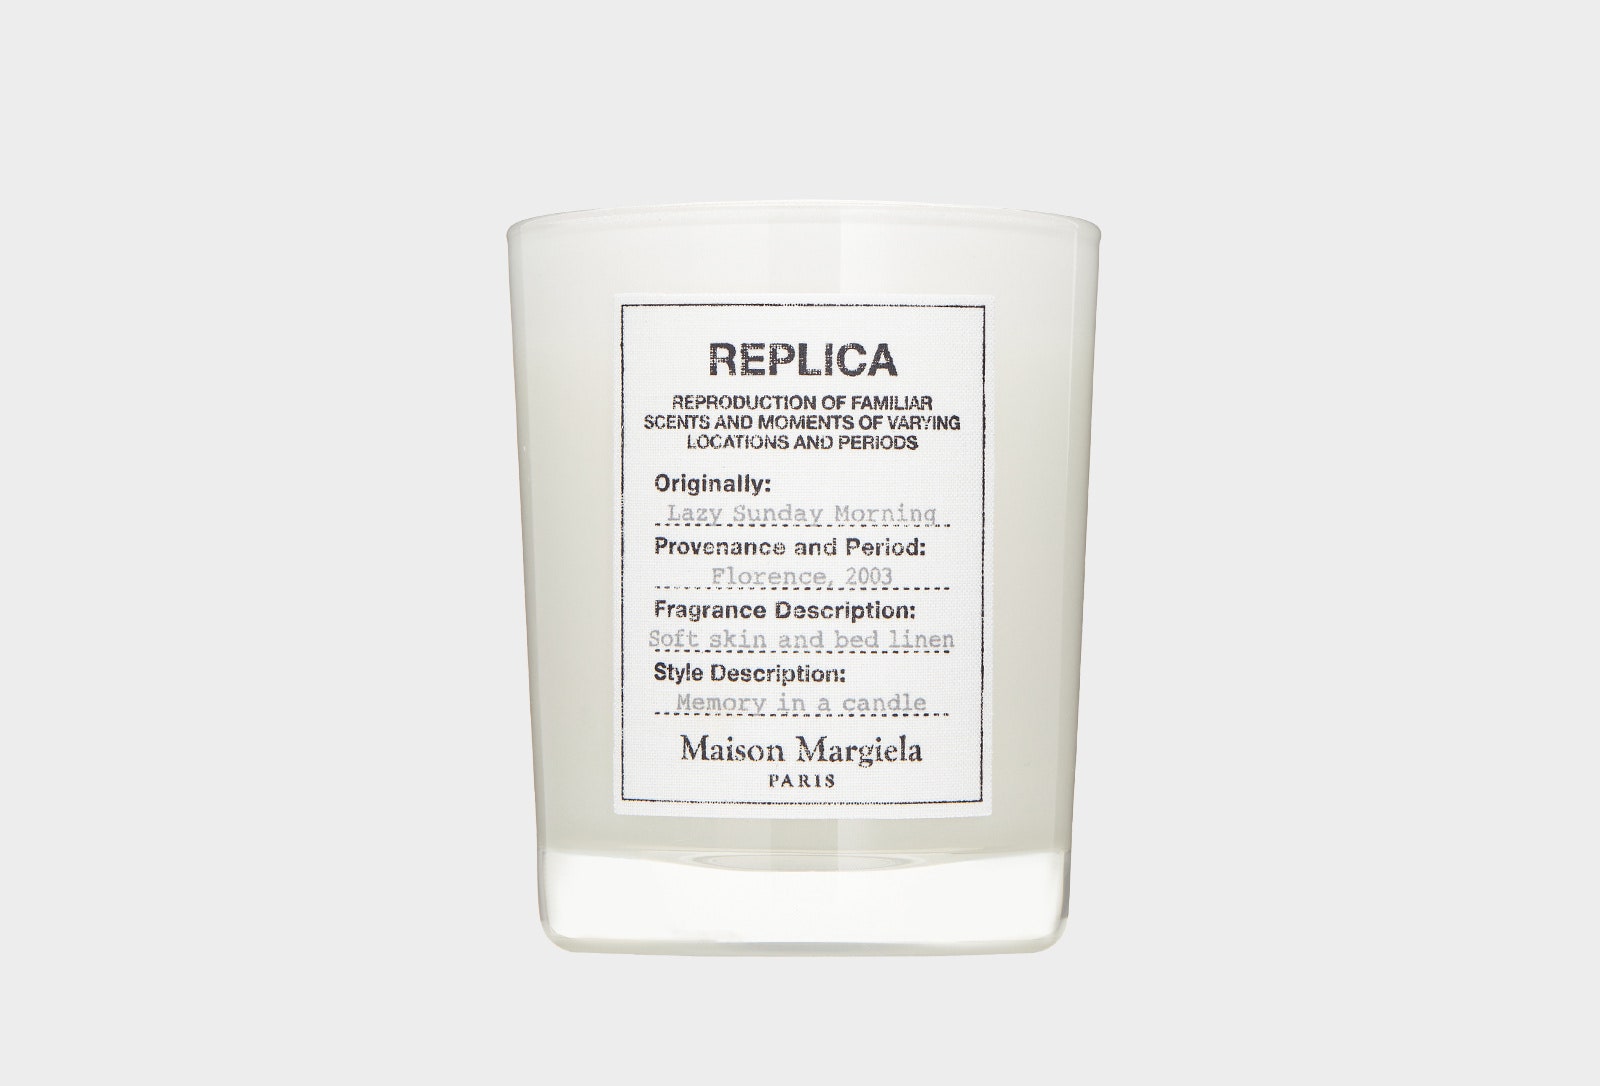 Ароматическая свеча Replica от Maison Margiela 5850 руб. Аромат Lazy Sunday Morning с нотами груши ландыша альдегиды...